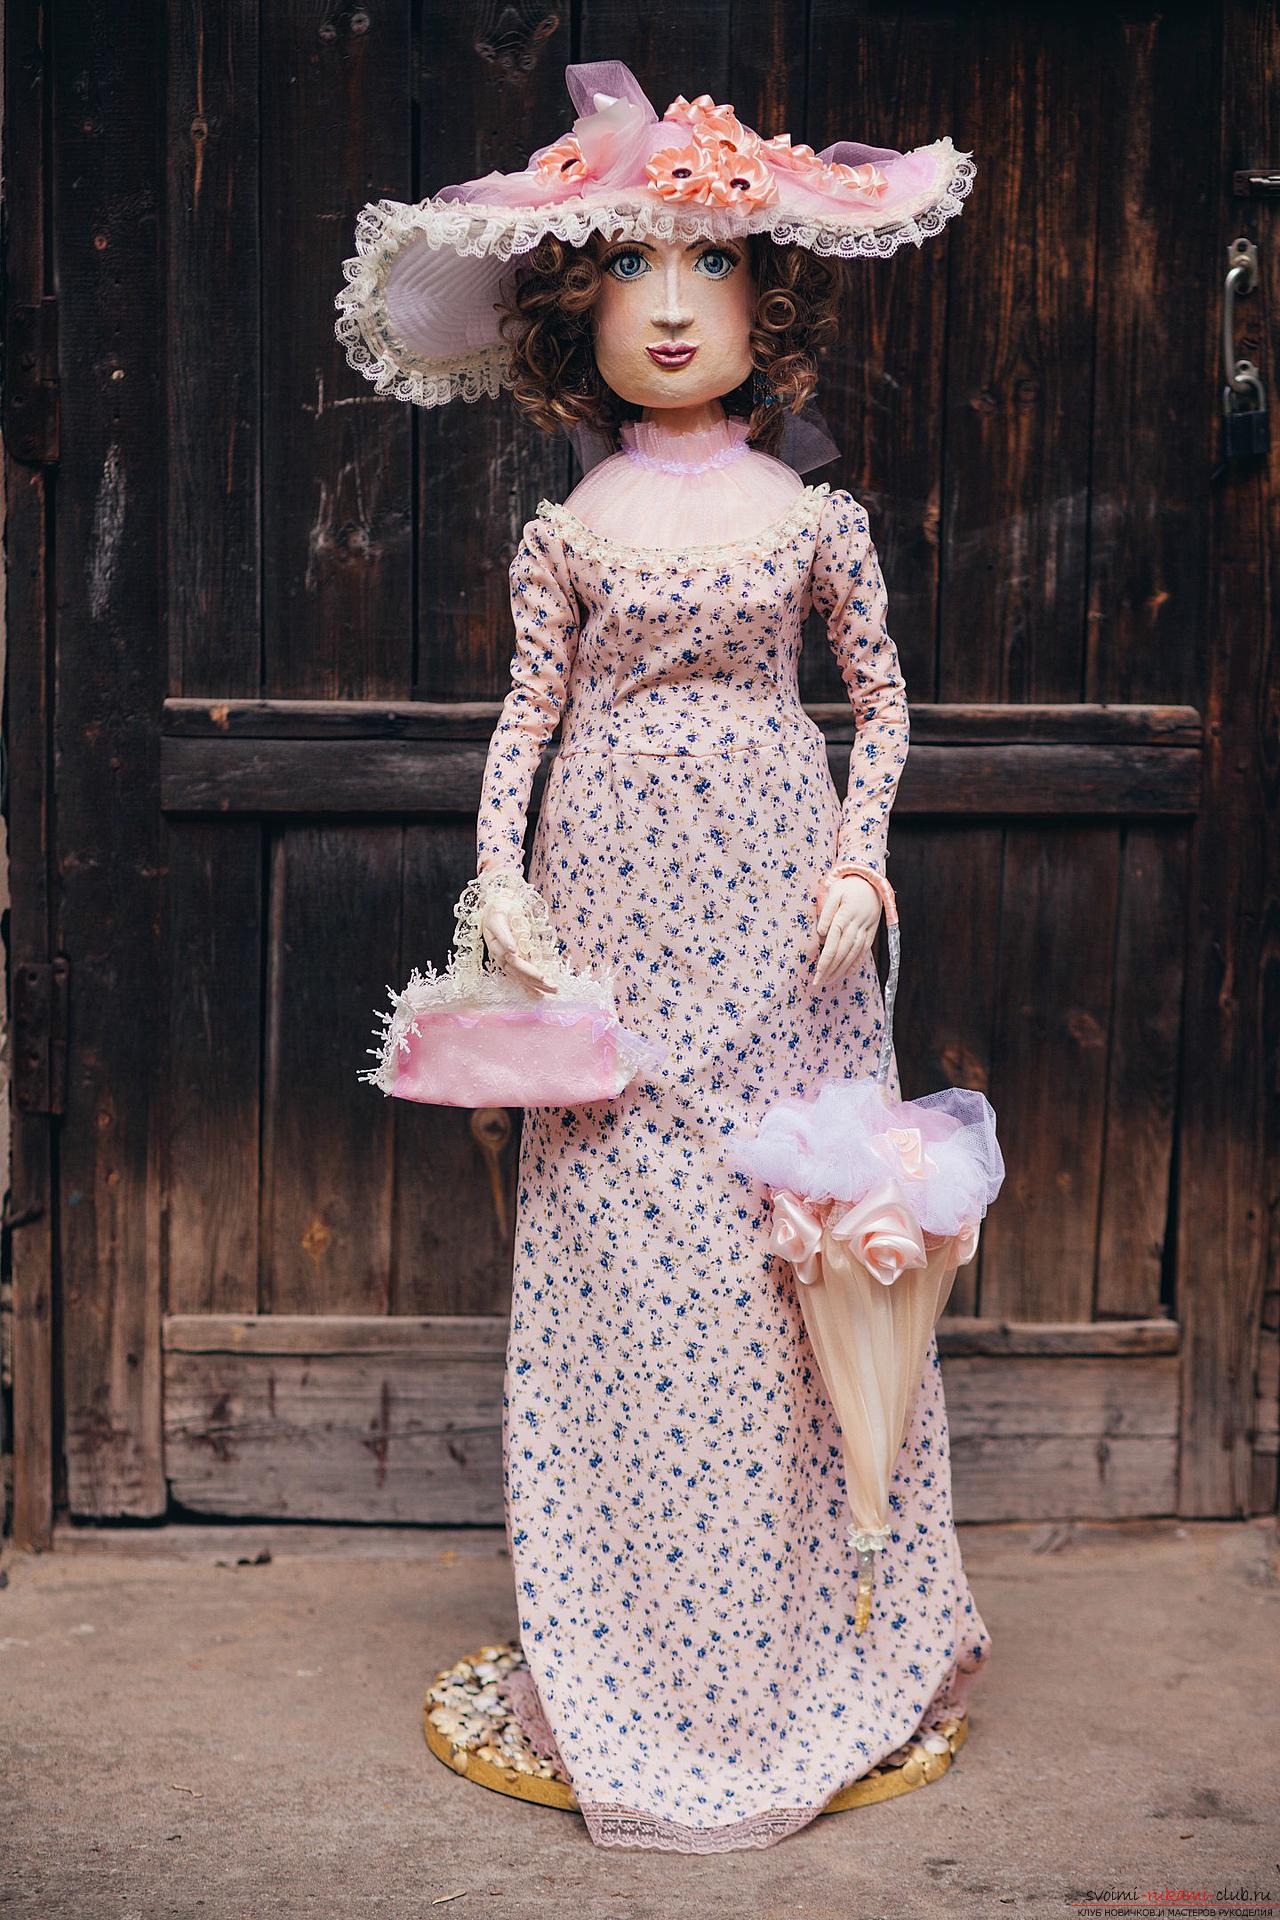 Подробные фотографии крупной куклы высотой более метра в образе чеховской героини. Фото №4